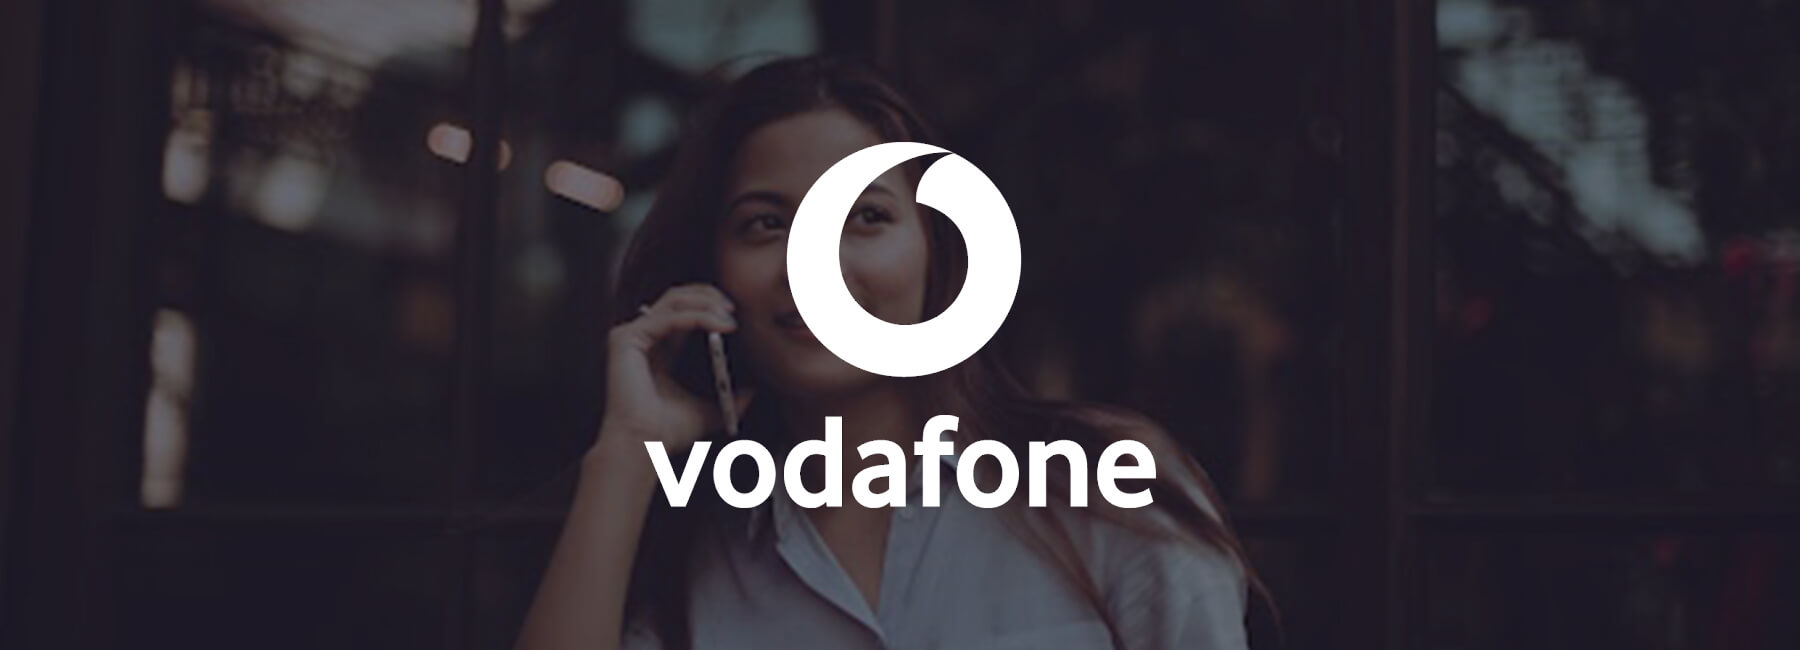 Vodafone Ireland setzt bei seinen digitalen Kanälen auf Kundenorientierung